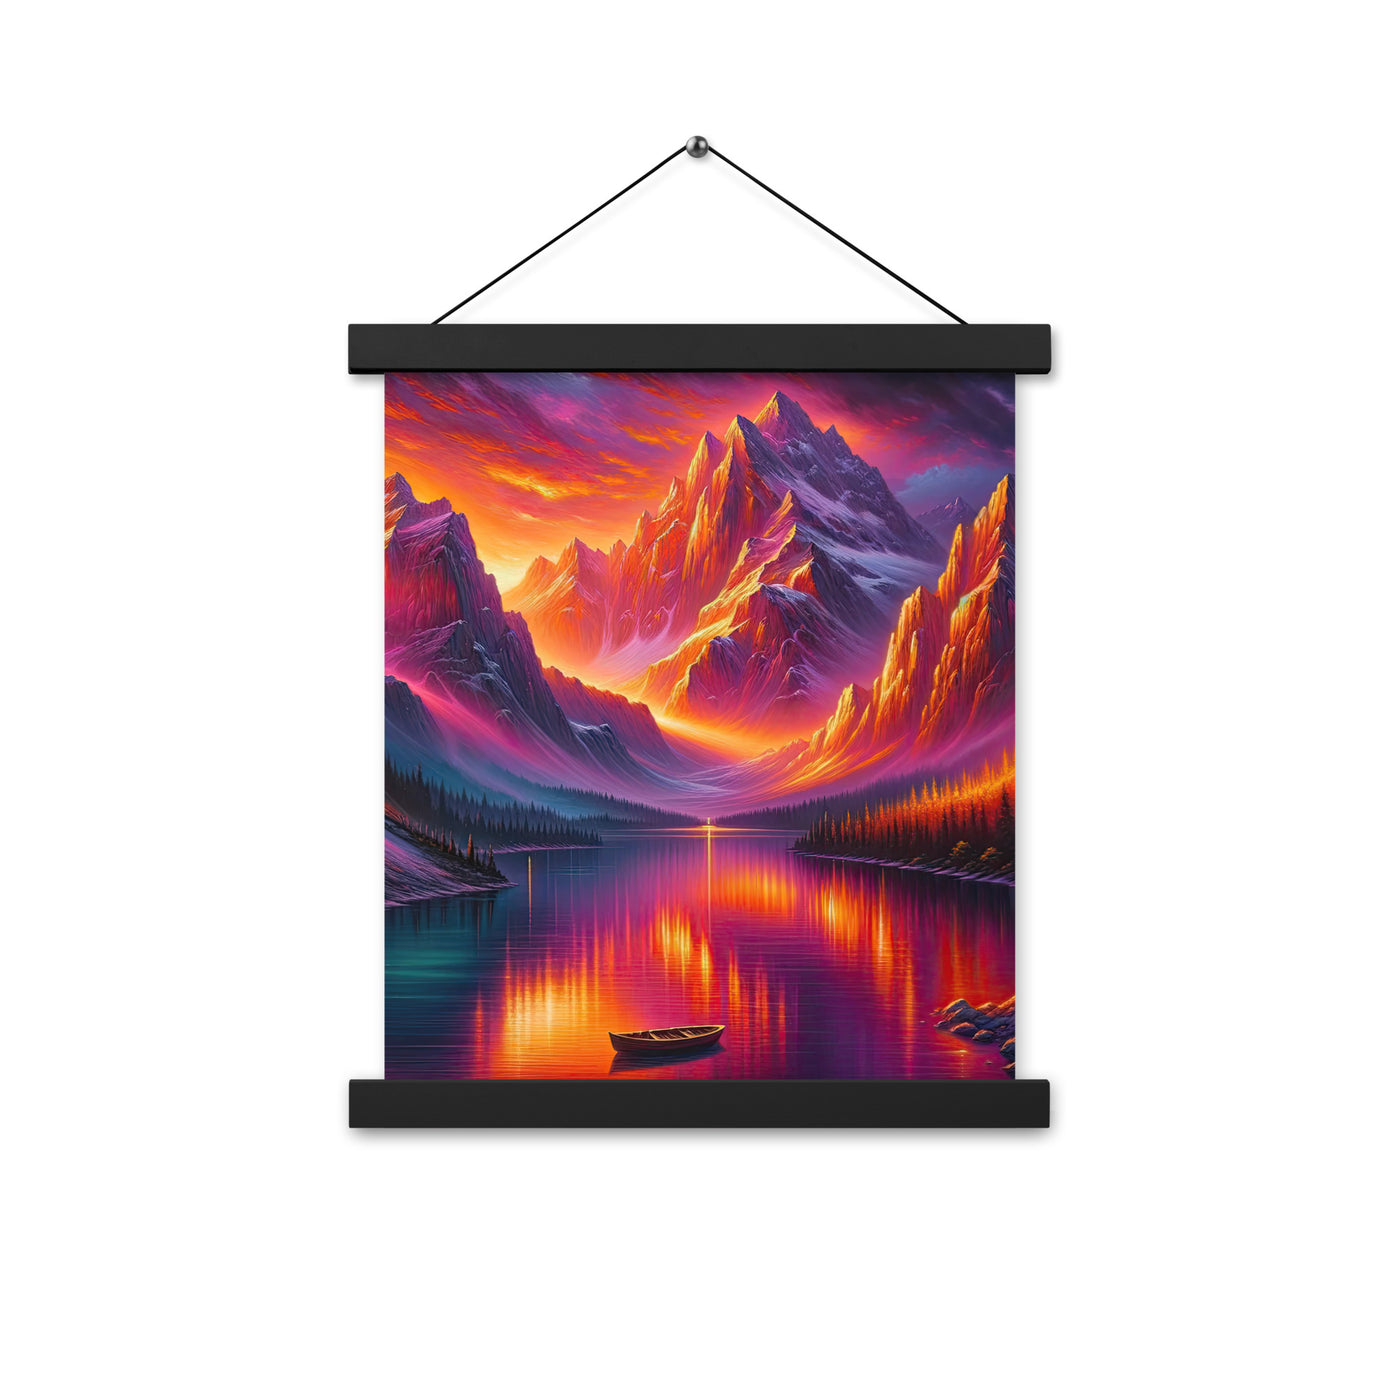 Ölgemälde eines Bootes auf einem Bergsee bei Sonnenuntergang, lebendige Orange-Lila Töne - Premium Poster mit Aufhängung berge xxx yyy zzz 27.9 x 35.6 cm